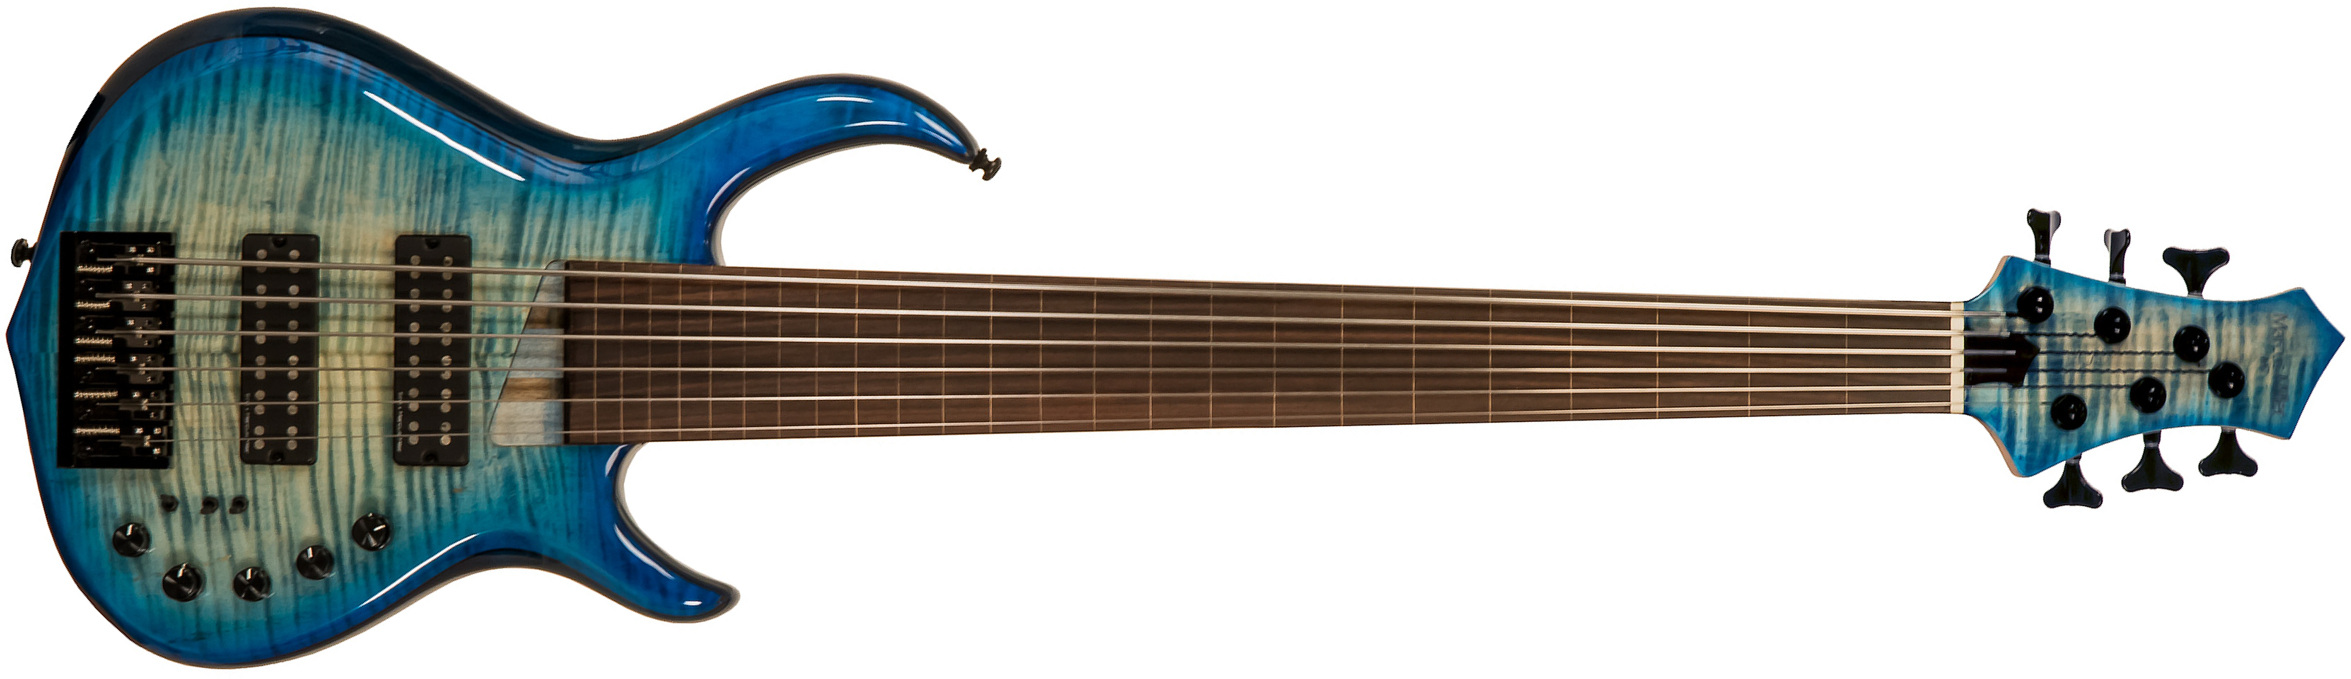 Marcus Miller M7 Swamp Ash 6st Fretless 6c Active Eb - Transparent Blue - Solid body elektrische bas - Main picture